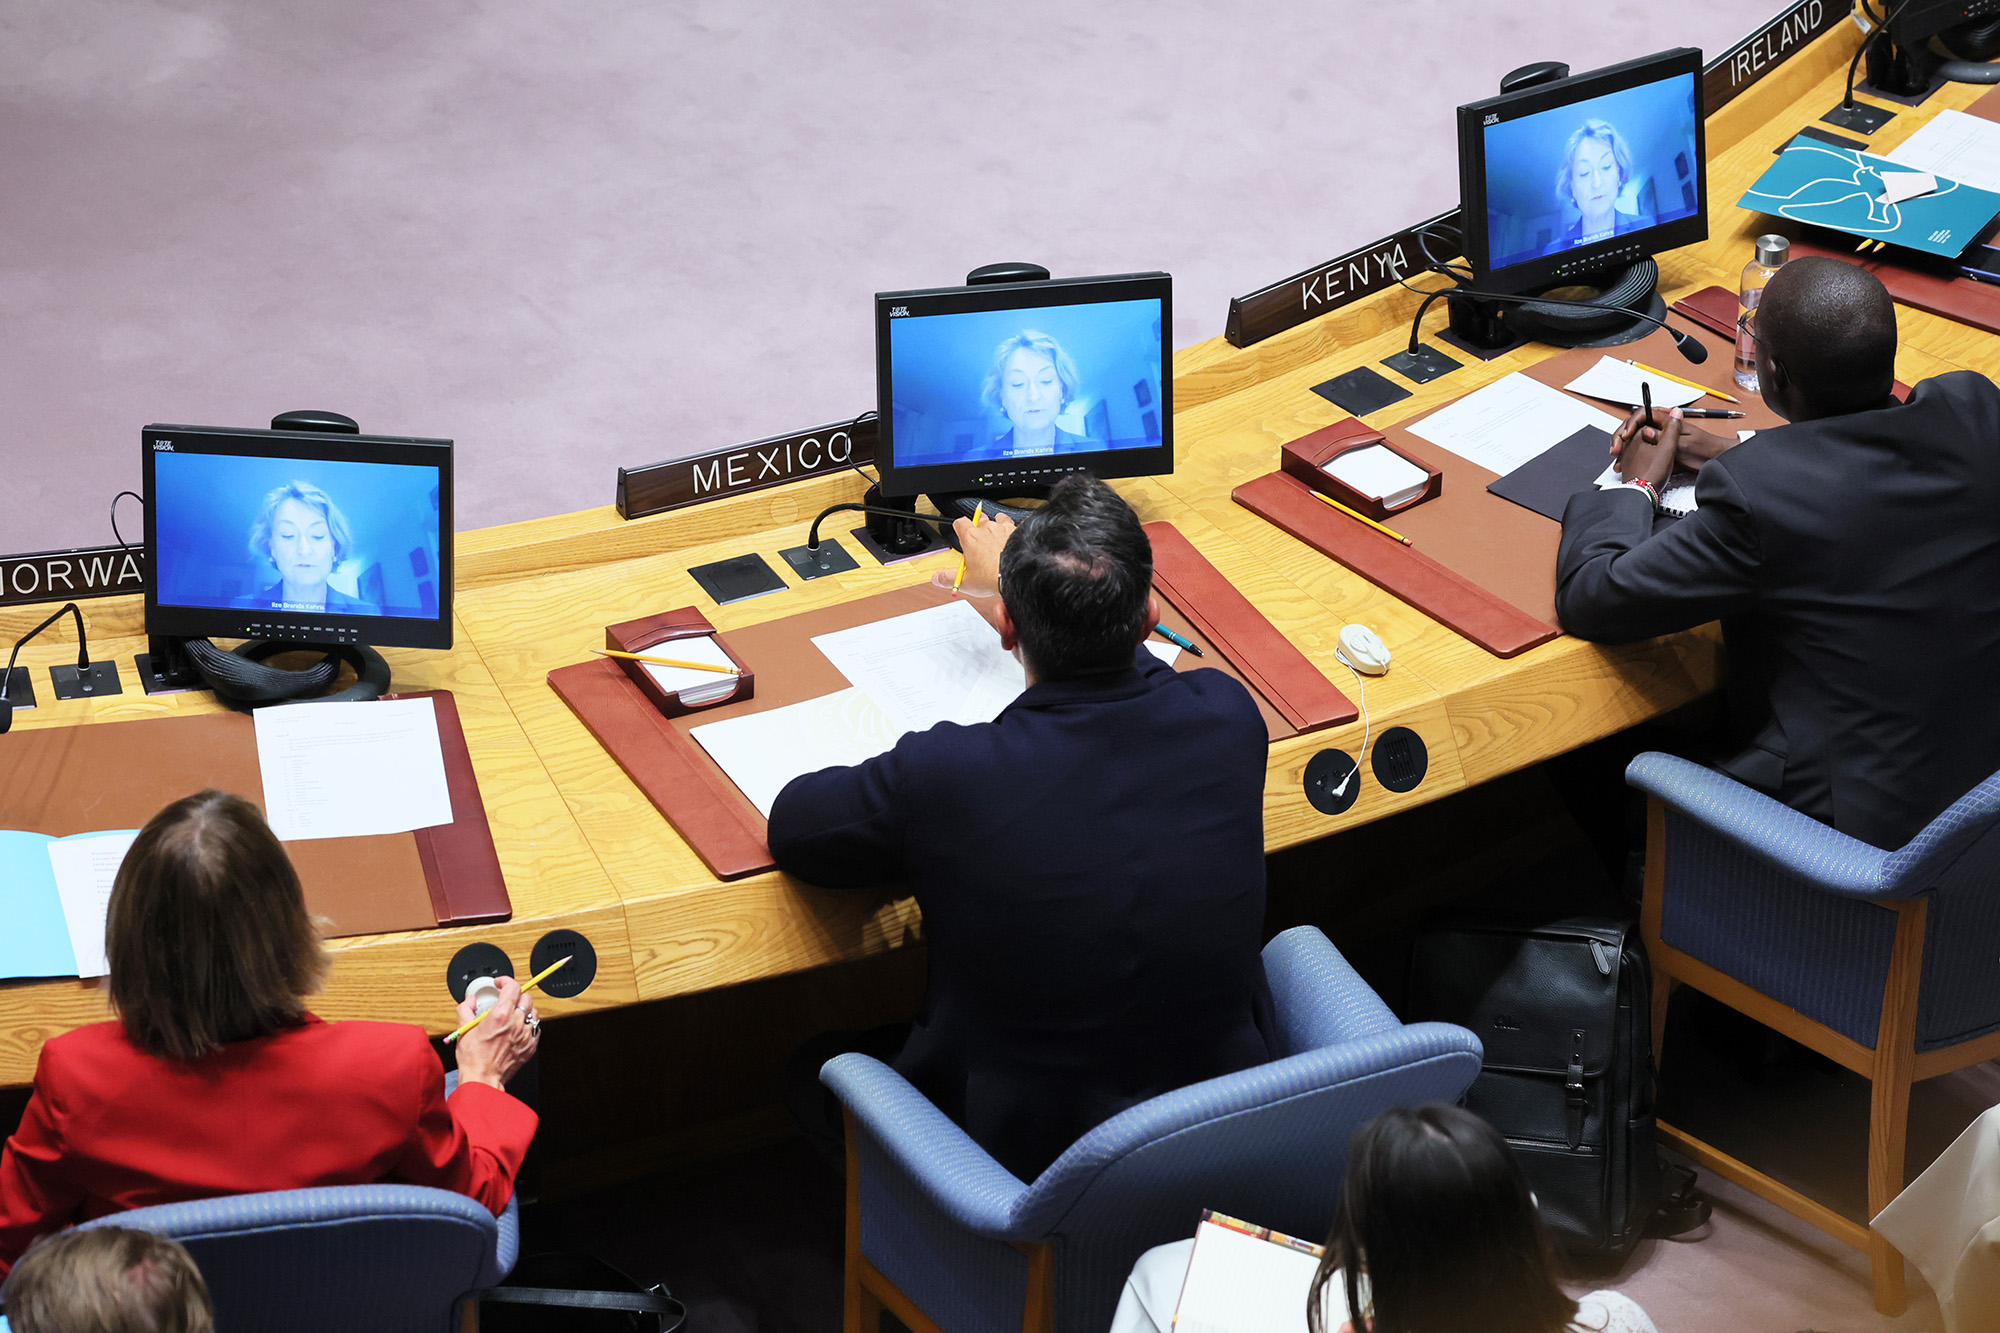 Els Brandis Kerris, sous-secrétaire générale aux droits de l'homme, prend la parole virtuellement lors d'une réunion du Conseil de sécurité des Nations Unies pour discuter de la guerre en Ukraine au siège des Nations Unies, à New York, aux États-Unis, le 7 septembre.